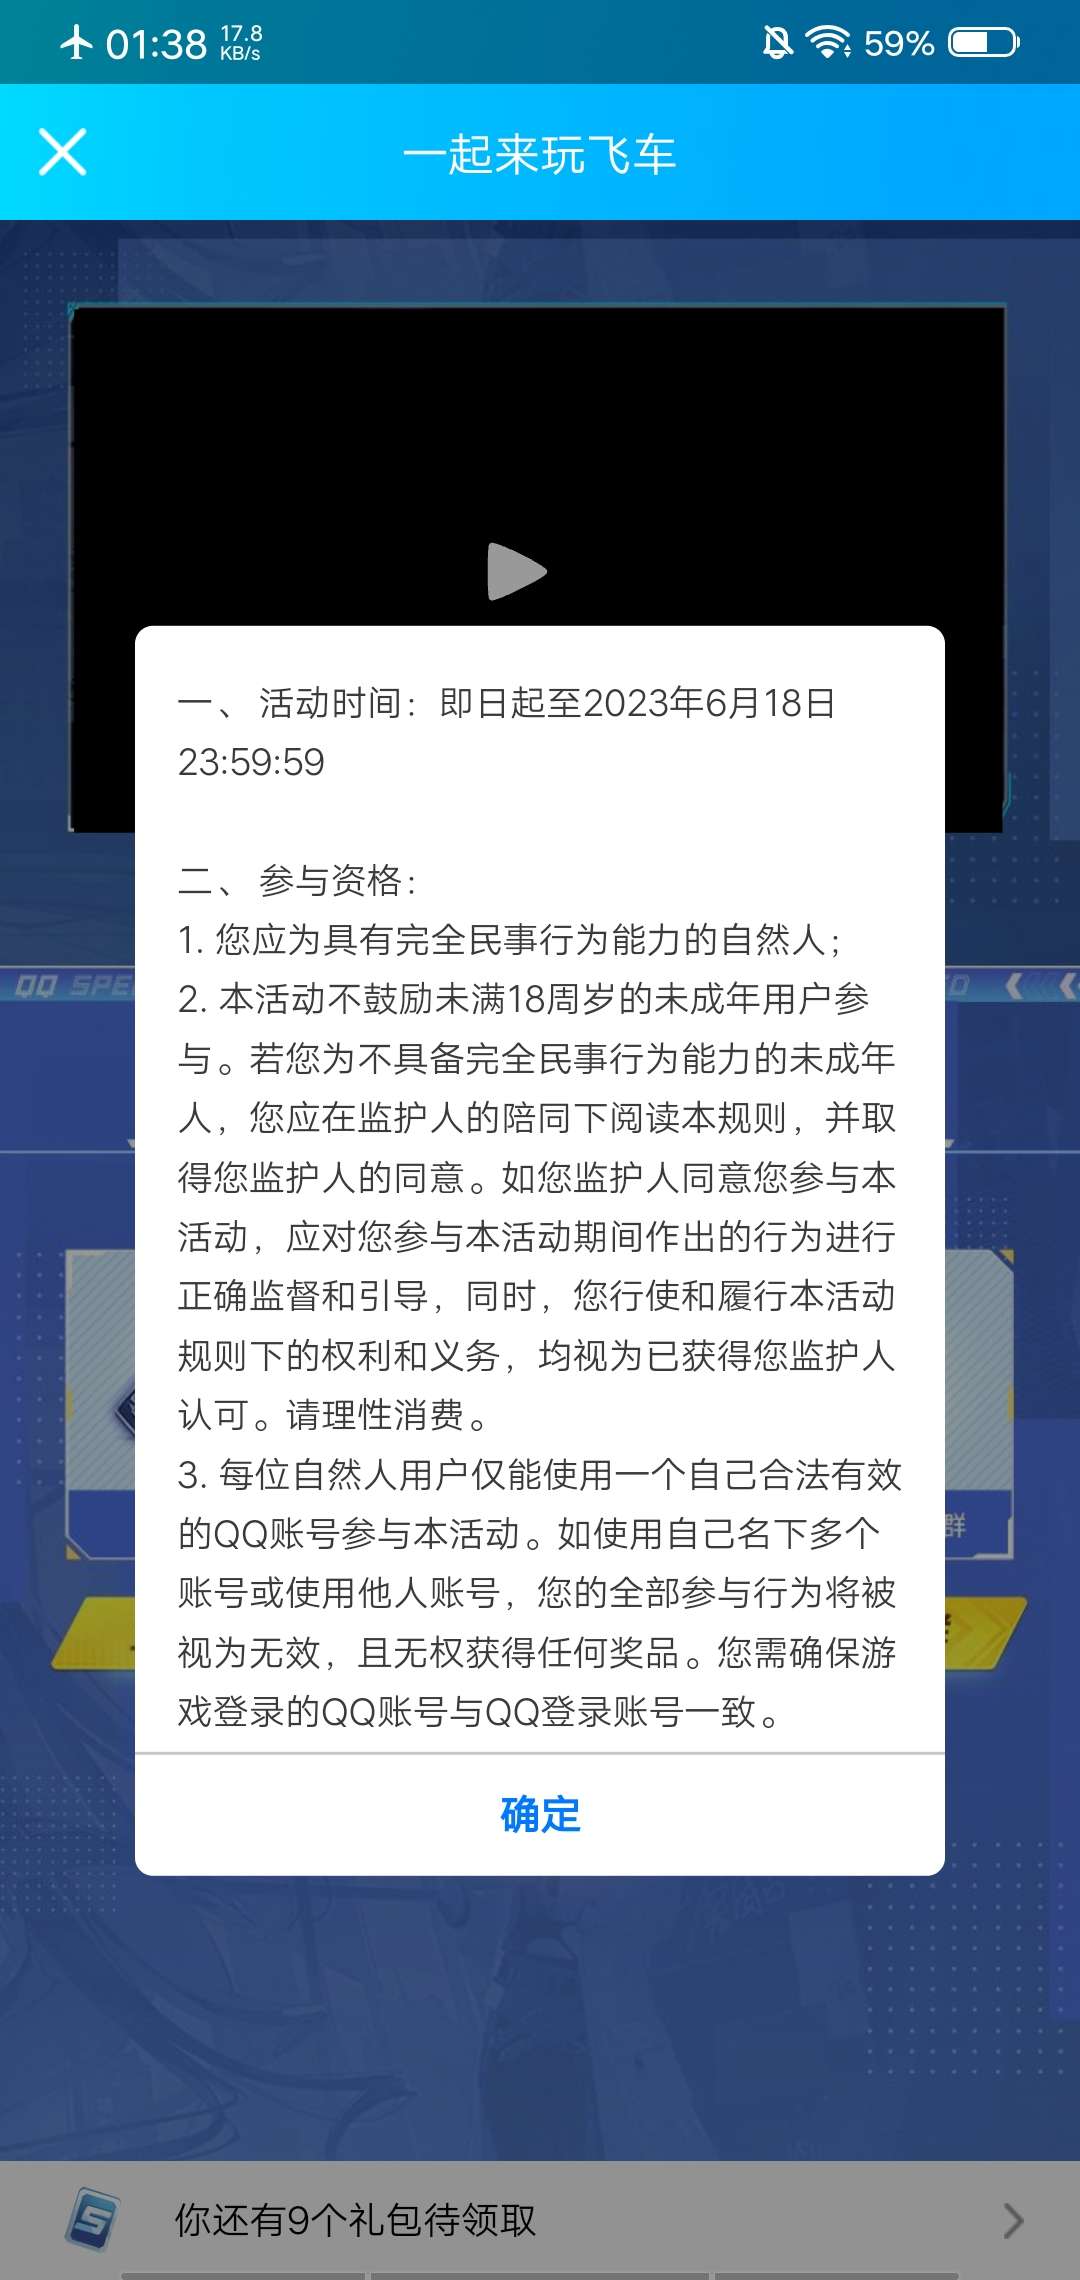 【虚拟物品】QQ飞车新用户注册抽Q币_福利线报